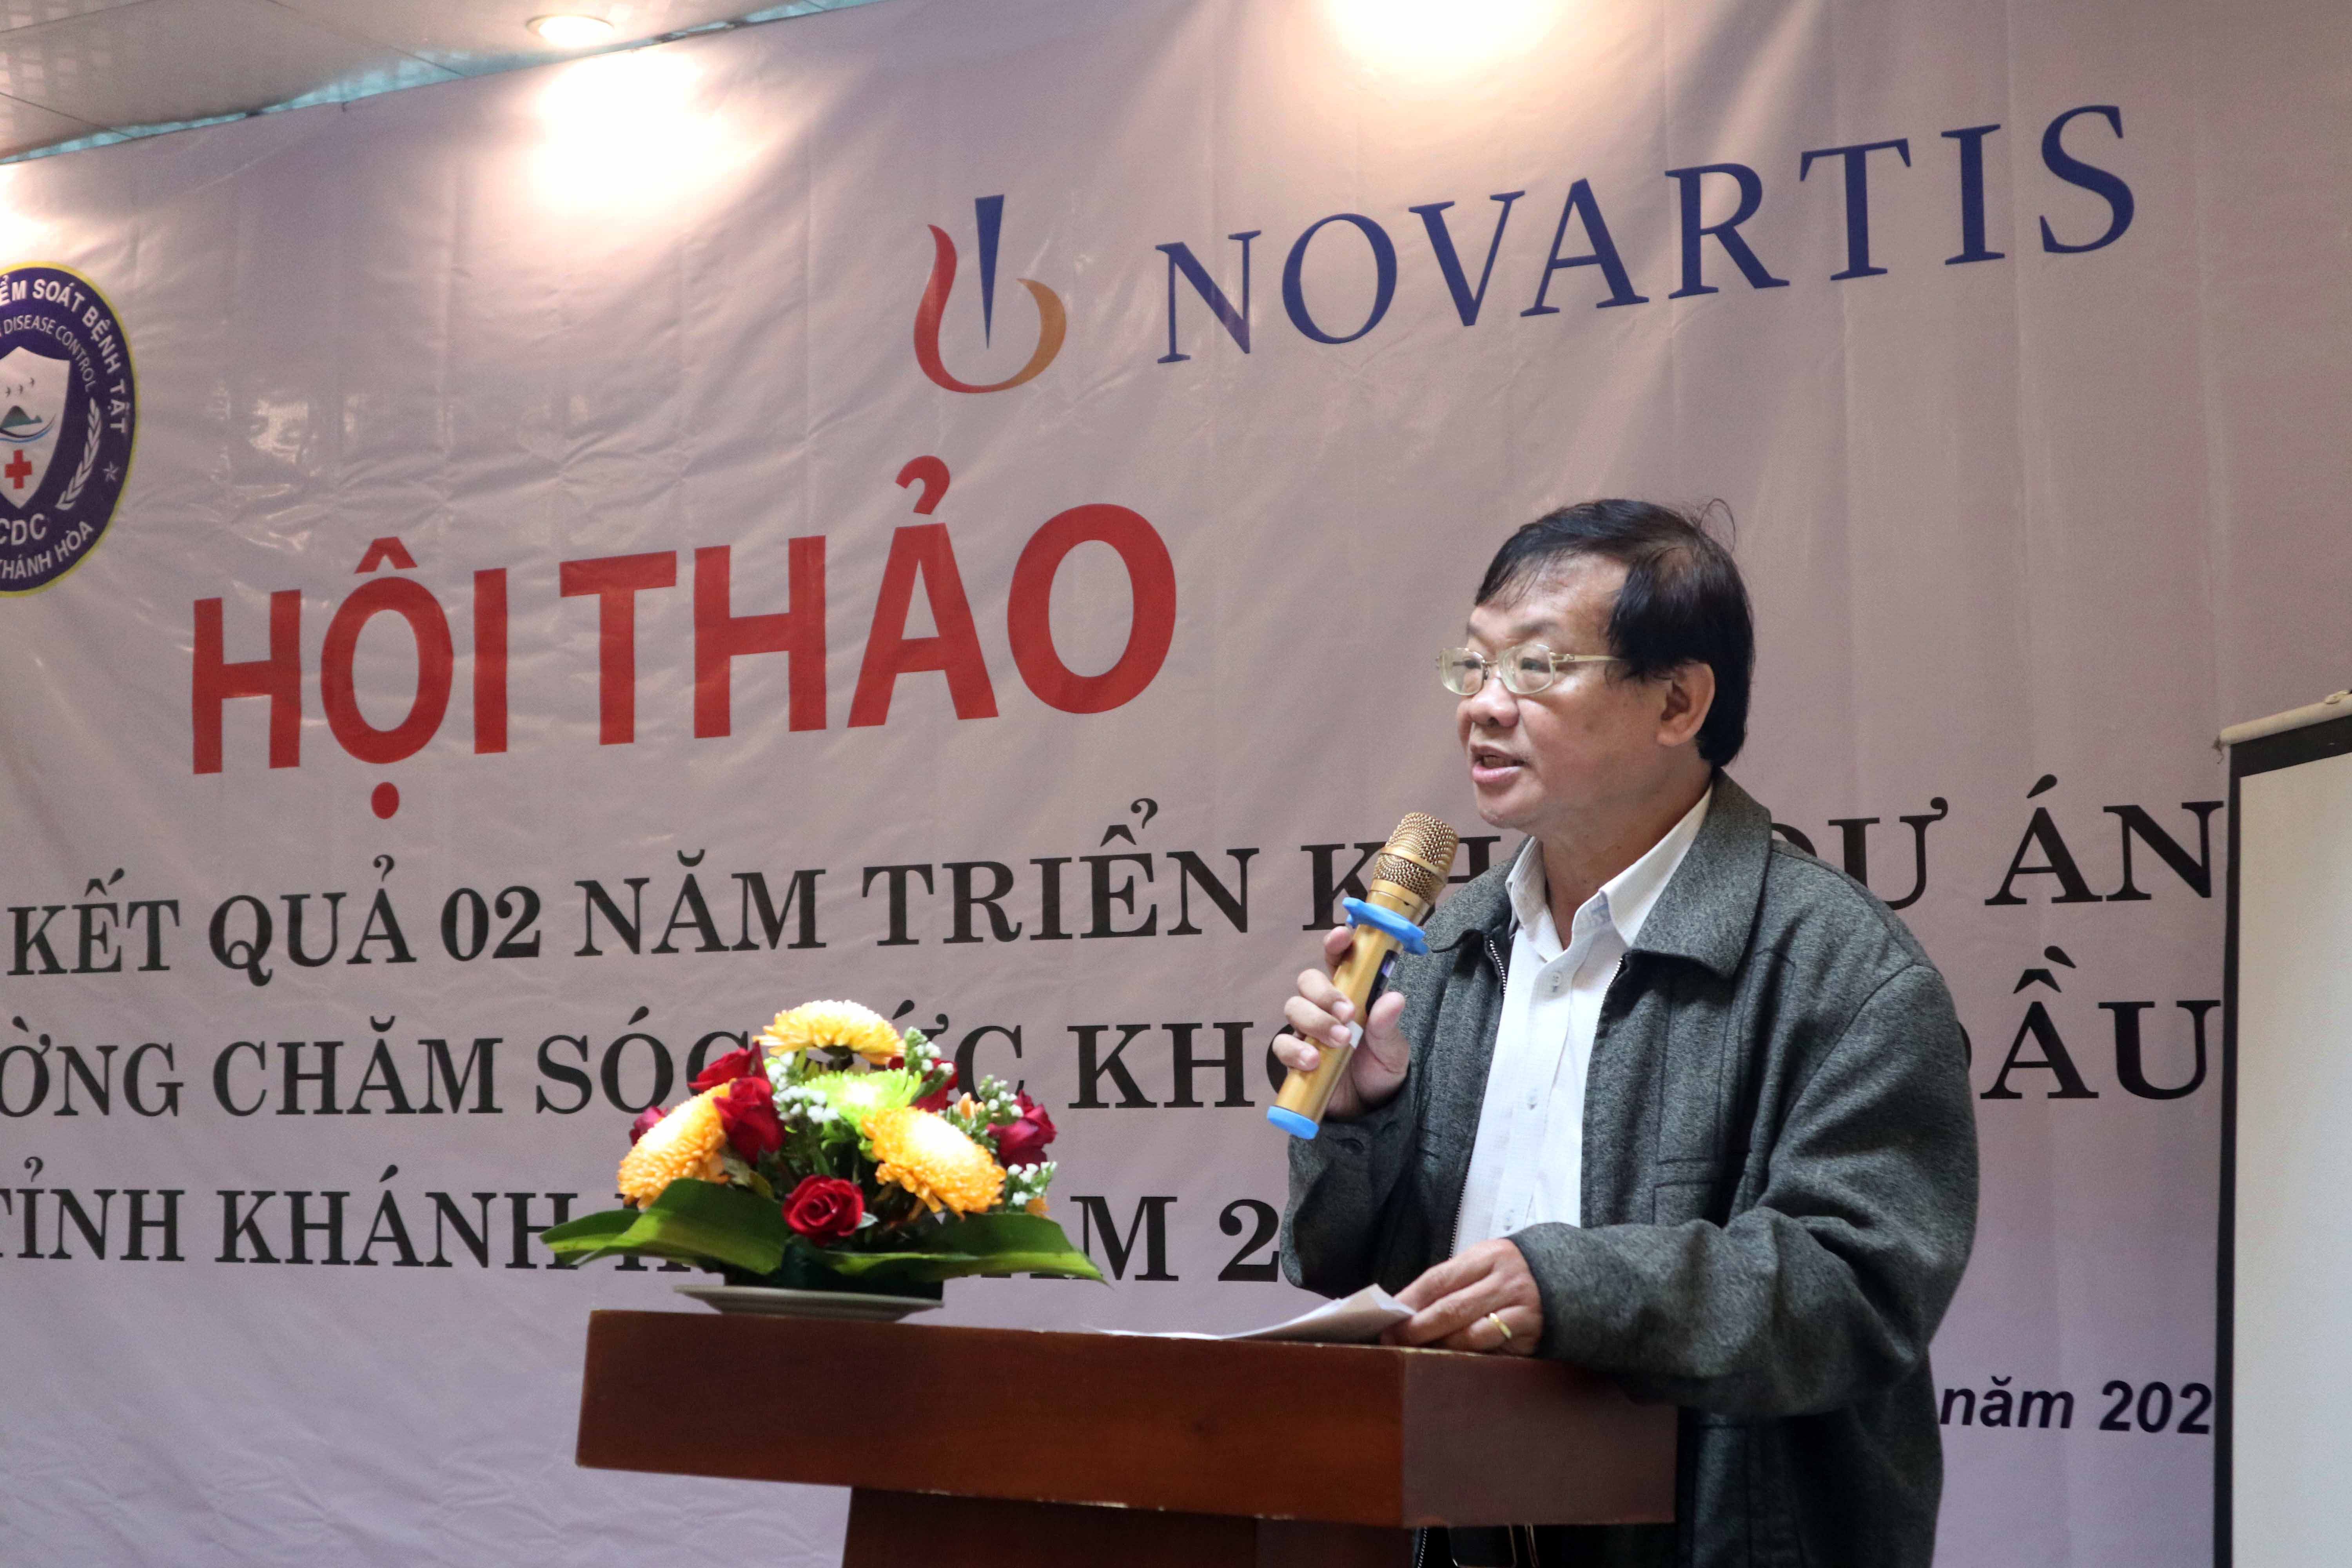 Hội thảo tổng kết dự án tăng cường chăm sóc sức khỏe ban đầu tại tỉnh Khánh Hòa giai đoạn 2020-2022